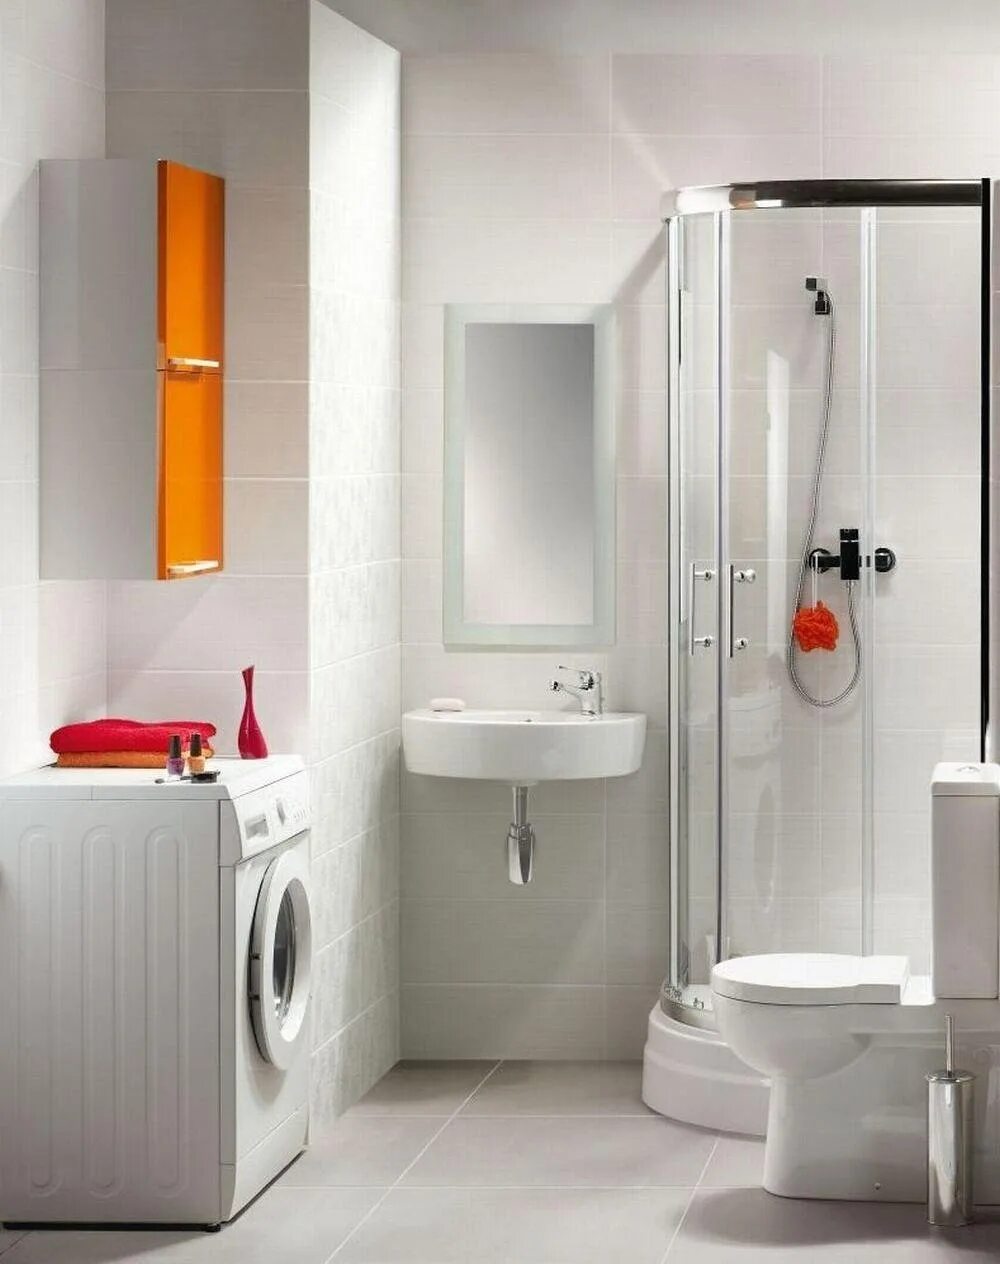 Унитаз Cersanit Nano p-ko-n011-2/4-DL. Маленькая душевая с туалетом и раковиной. Маленькая ванная с душевой кабинкой. Компактный санузел с душевой.